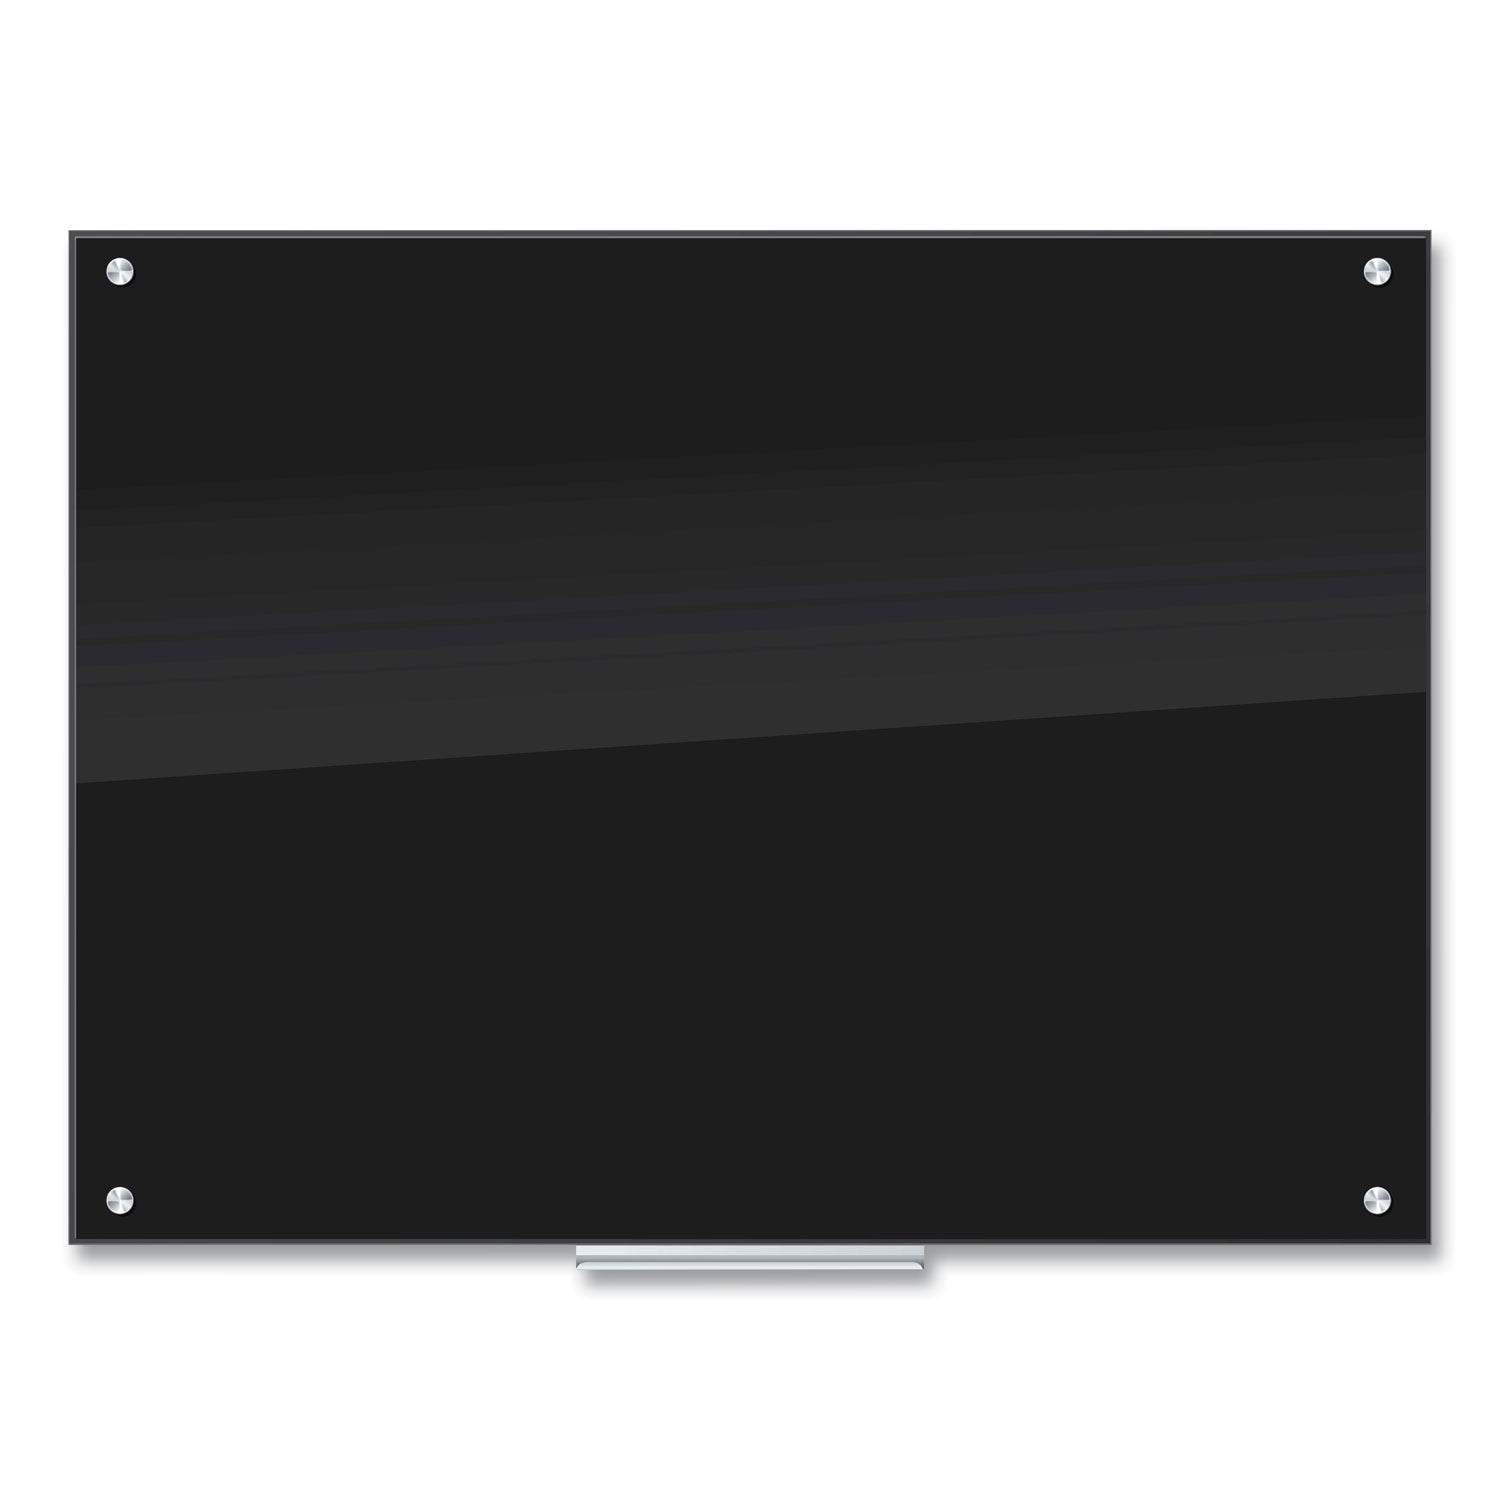 glass-dry-erase-board-47-x-35-black-surface_ubr171u0001 - 1